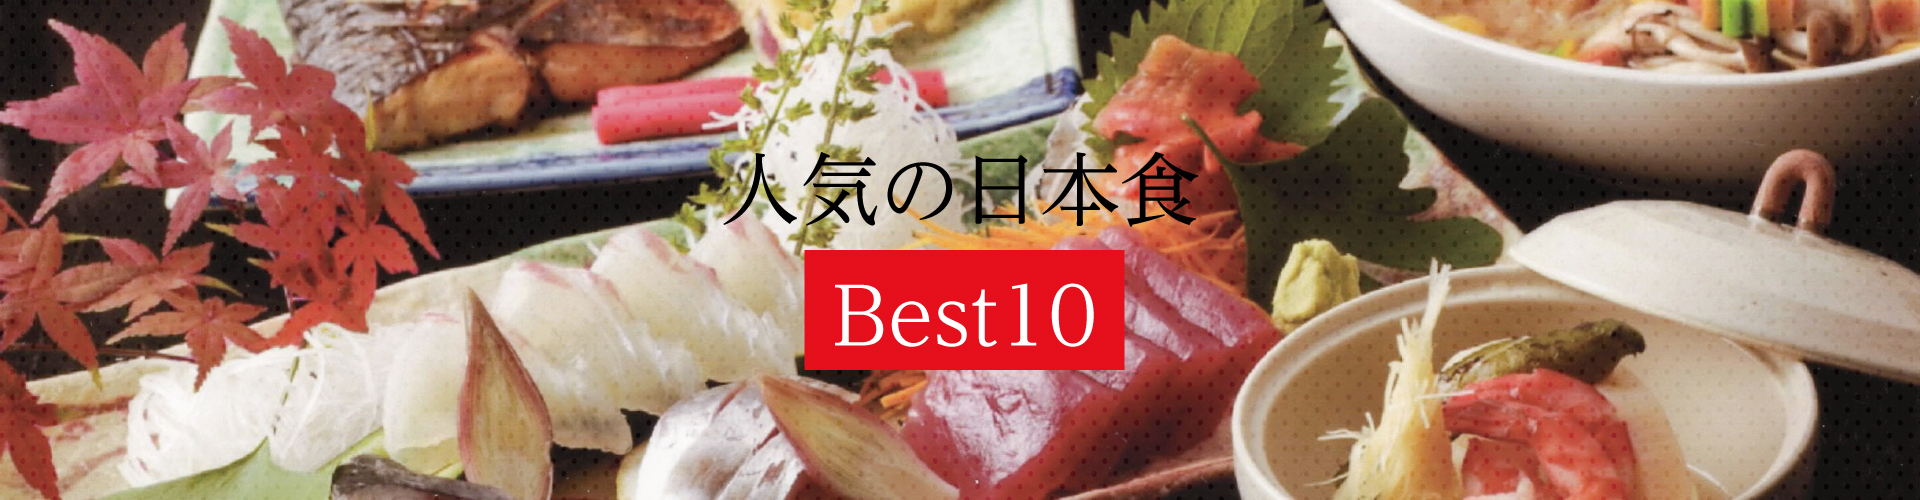 人気の日本食 Best10